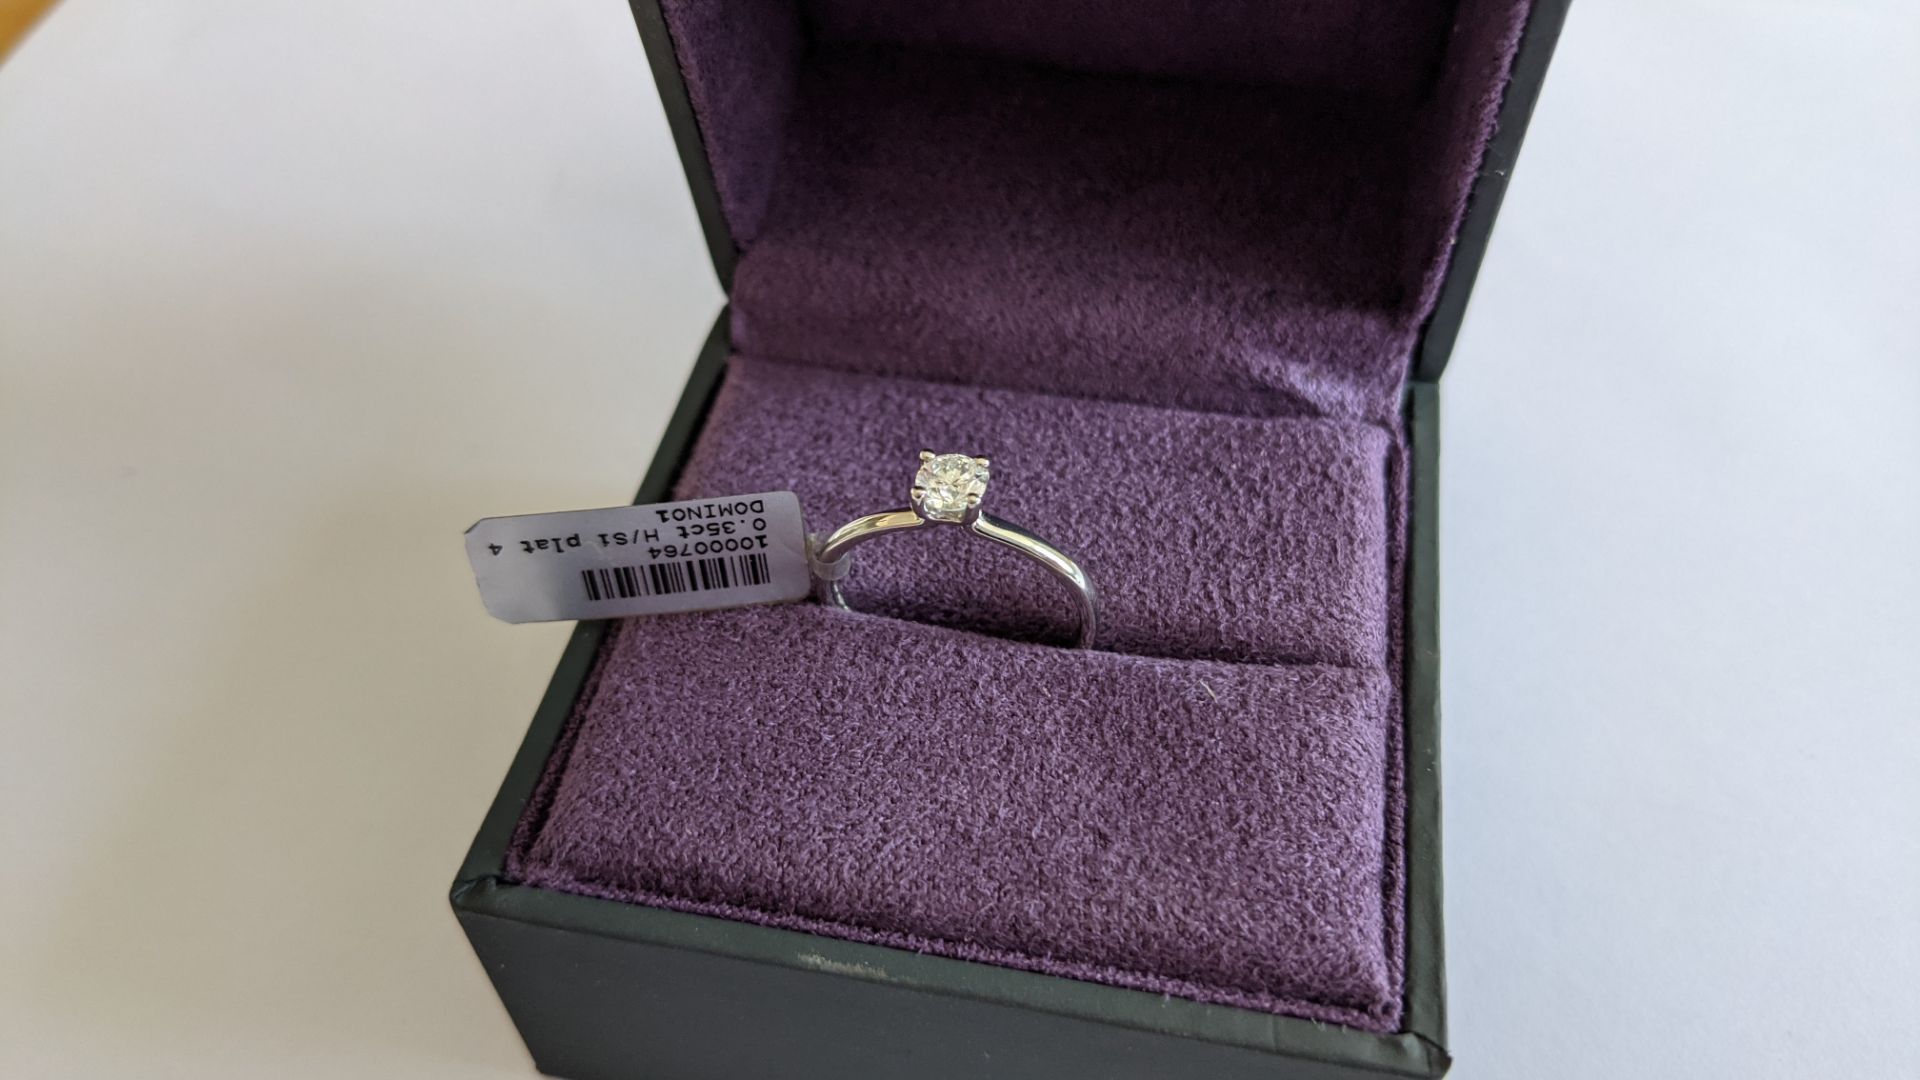 Single stone diamond & platinum 950 ring with 0.35ct H/Si diamond, RRP £1,507 - Image 7 of 29